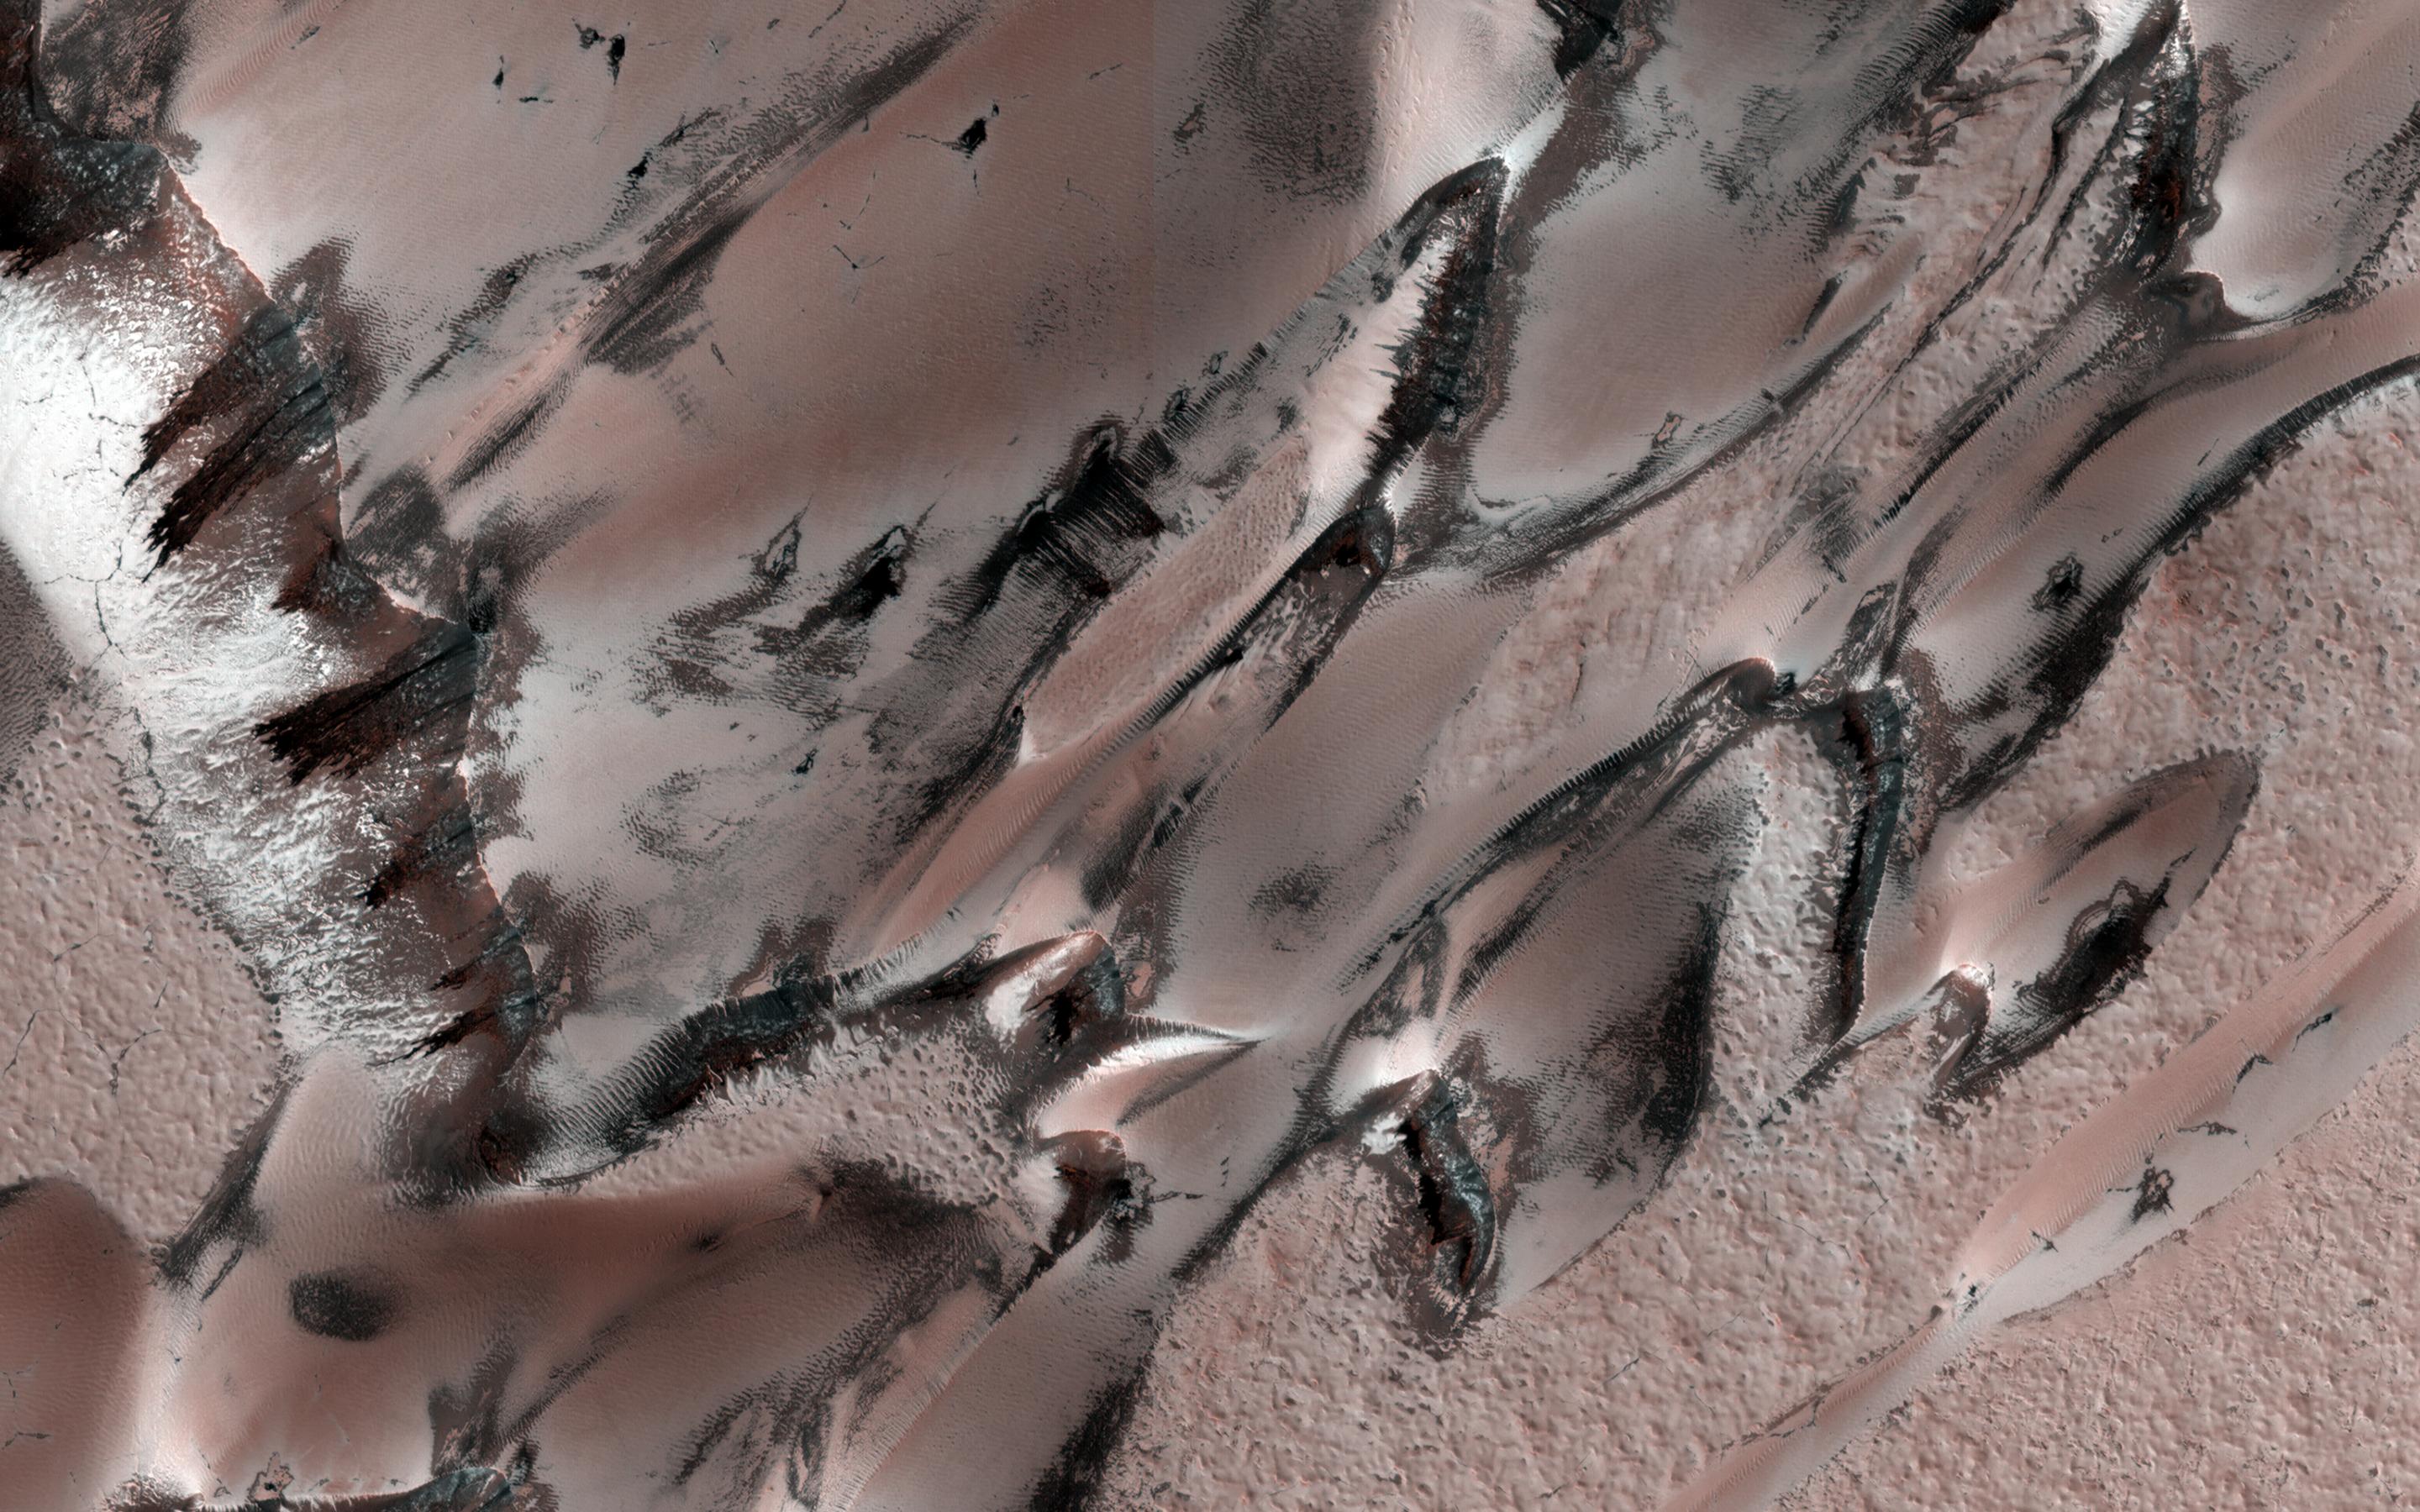 HiRISE capturó estas "megadunas", también llamadas barchans. Escarcha de dióxido de carbono y hielo se han formado sobre las dunas durante el invierno. / NASA/JPL-Caltech/Universidad de Arizona